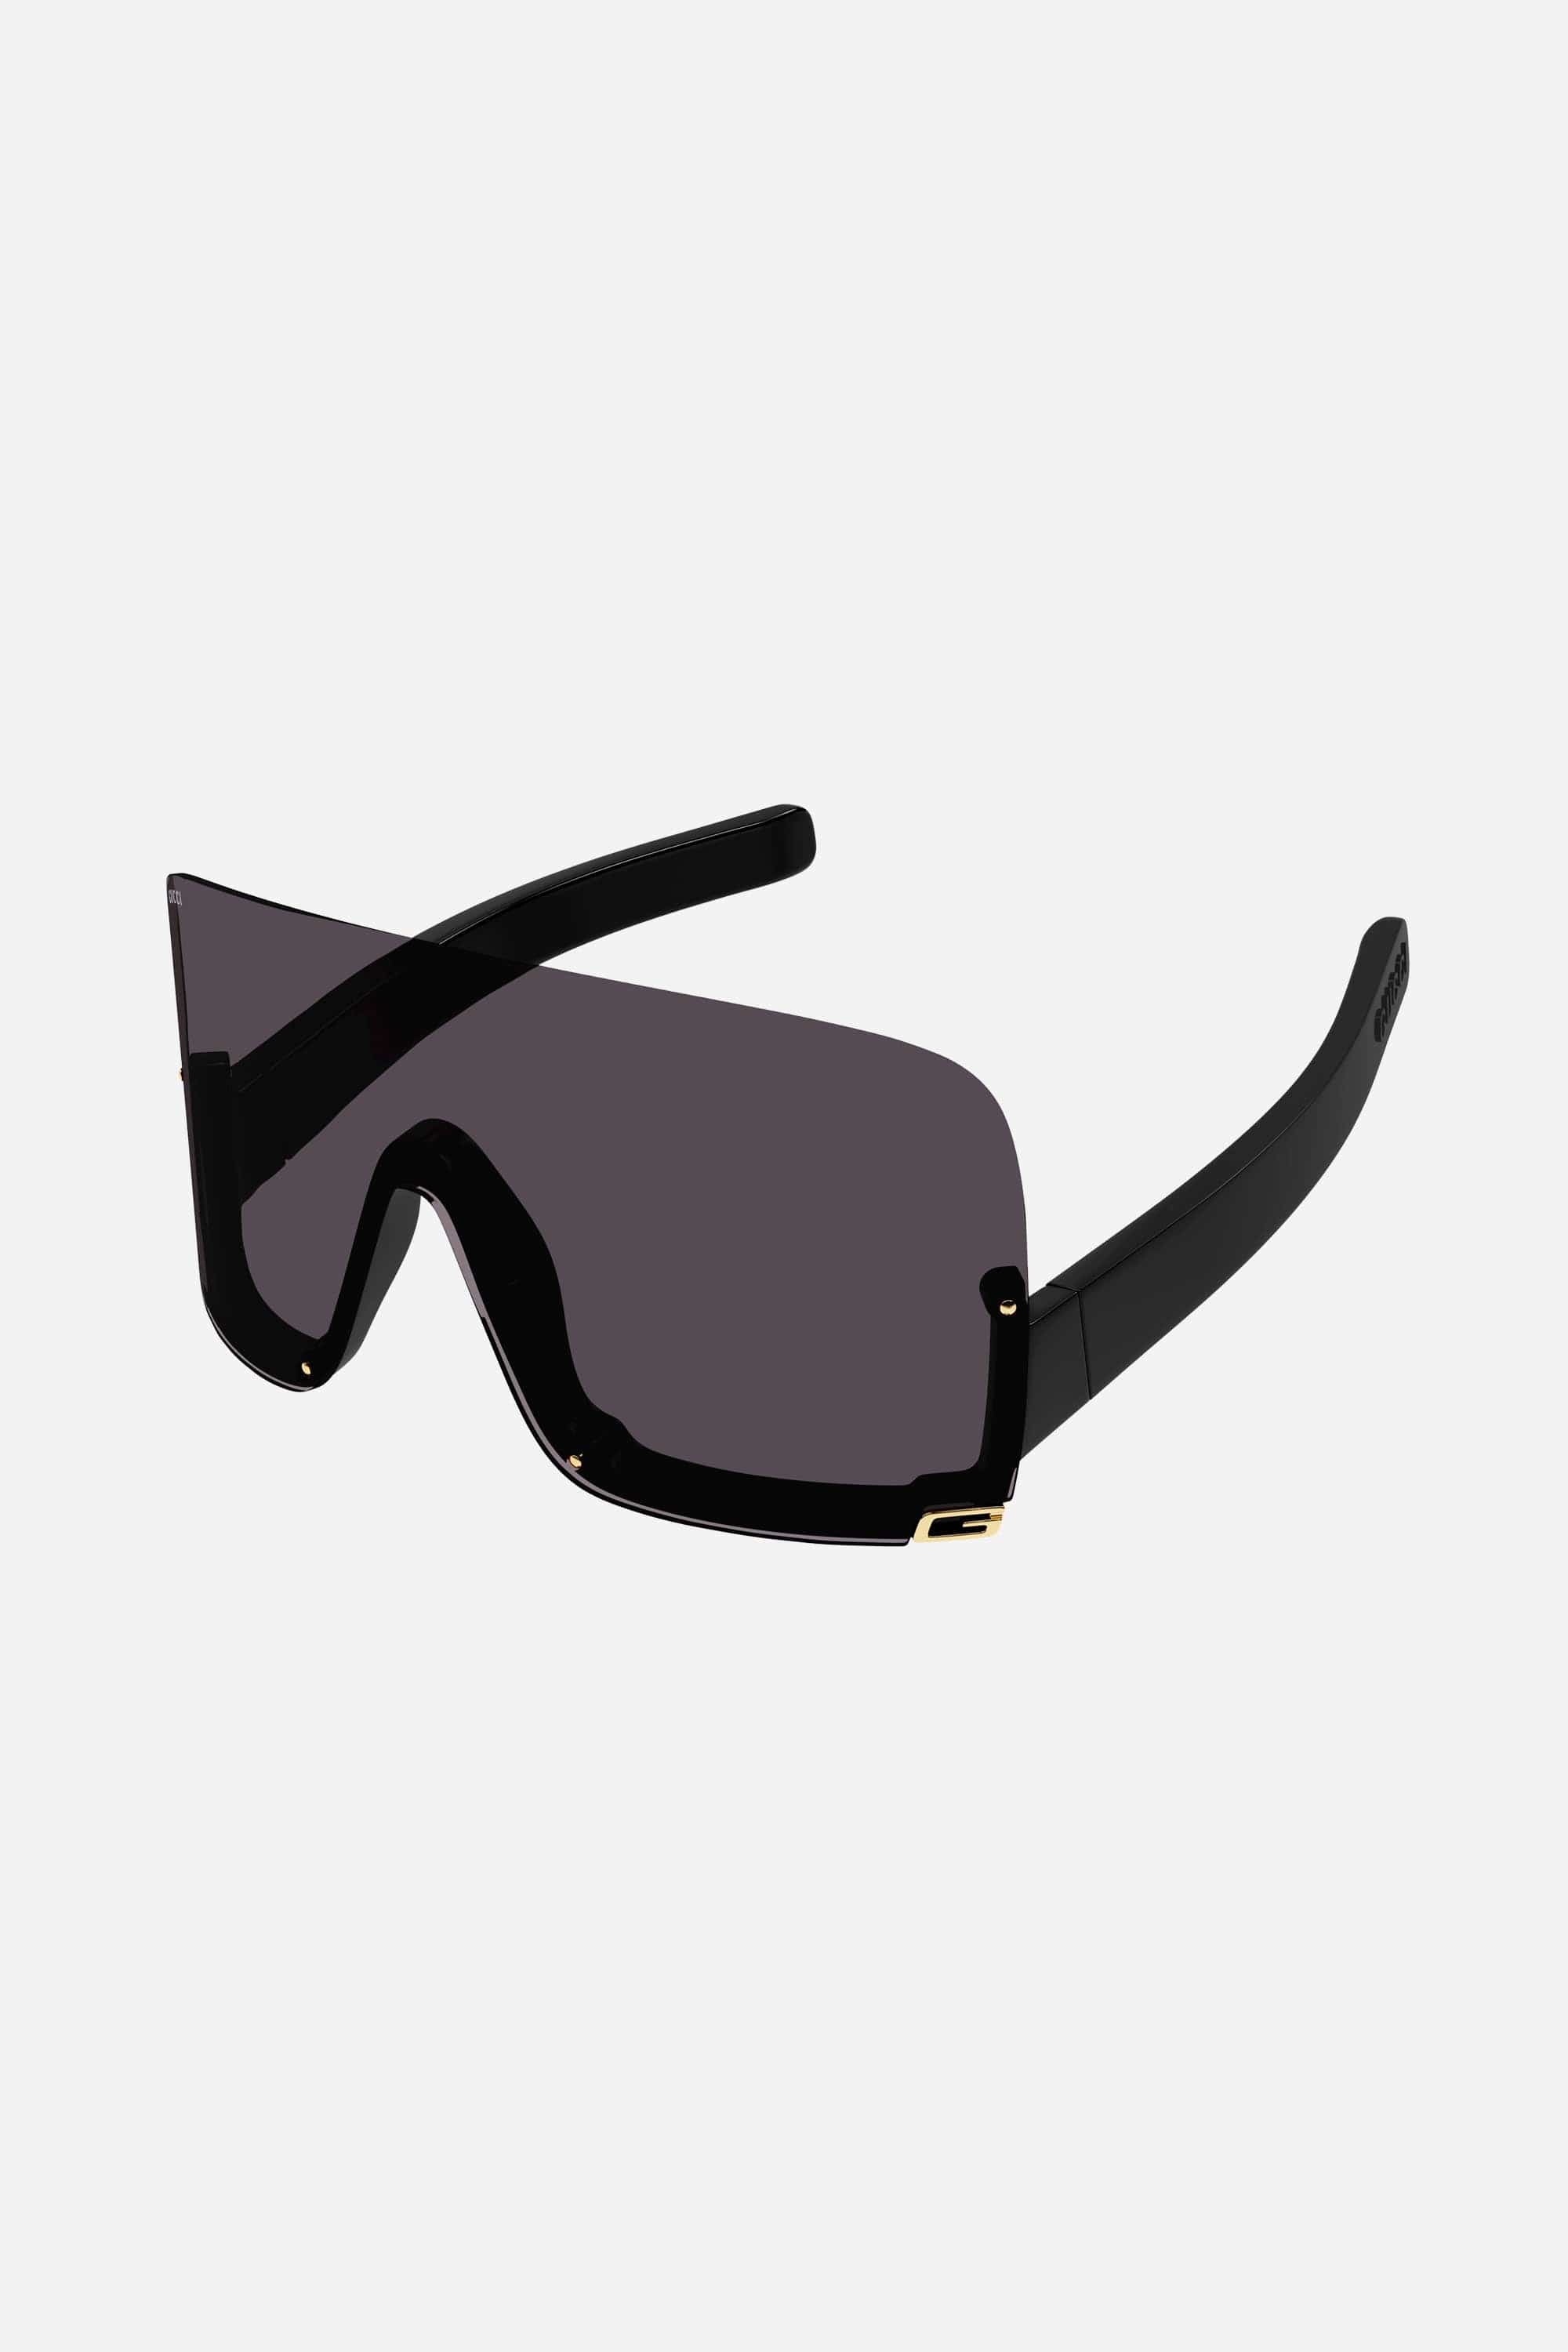 Gucci black fashion show mask sunglasses - Eyewear Club